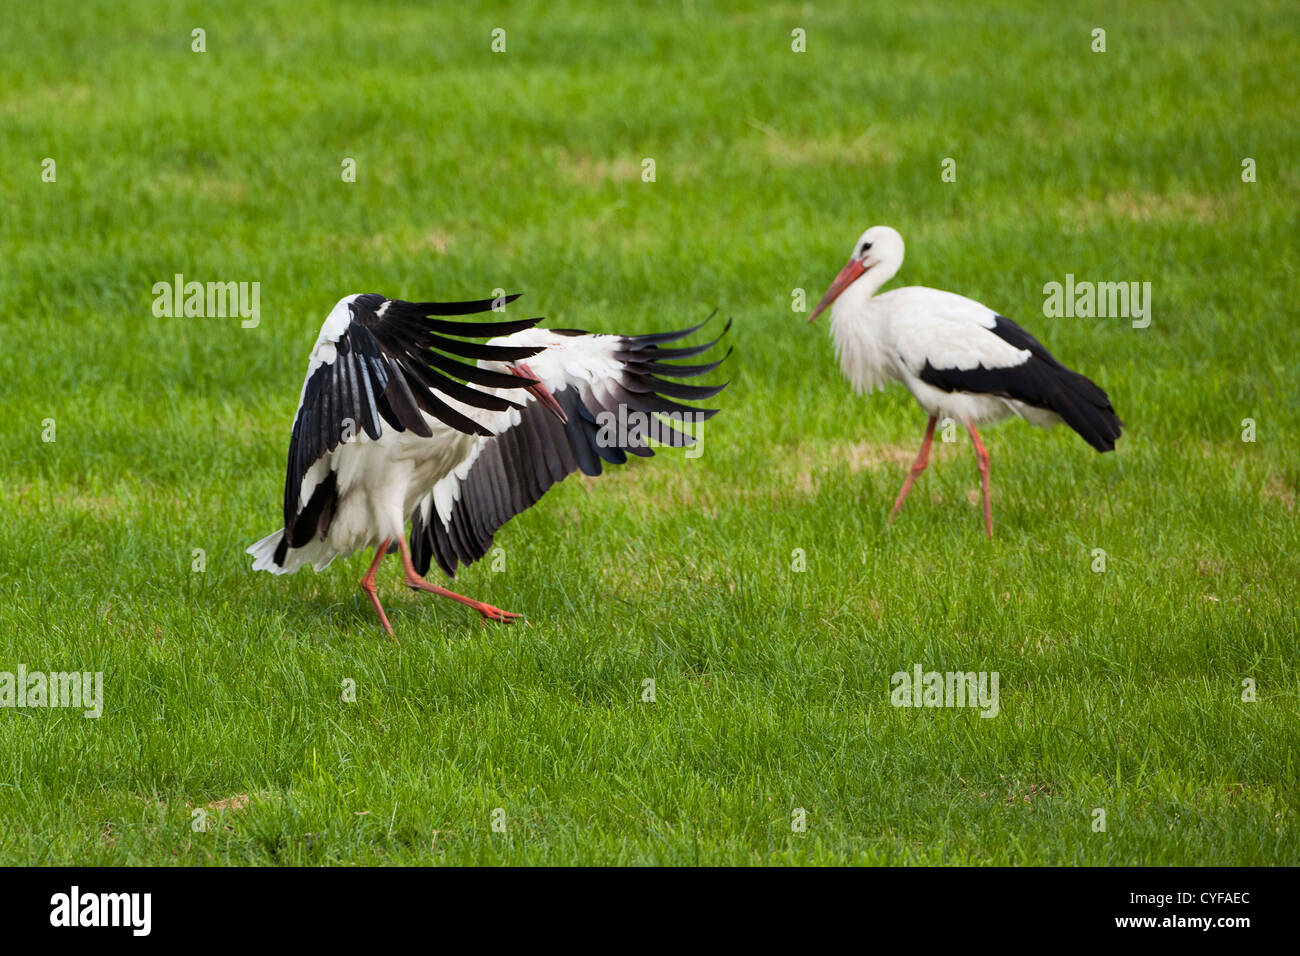 The Netherlands, 's-Graveland, Common storks. Stock Photo